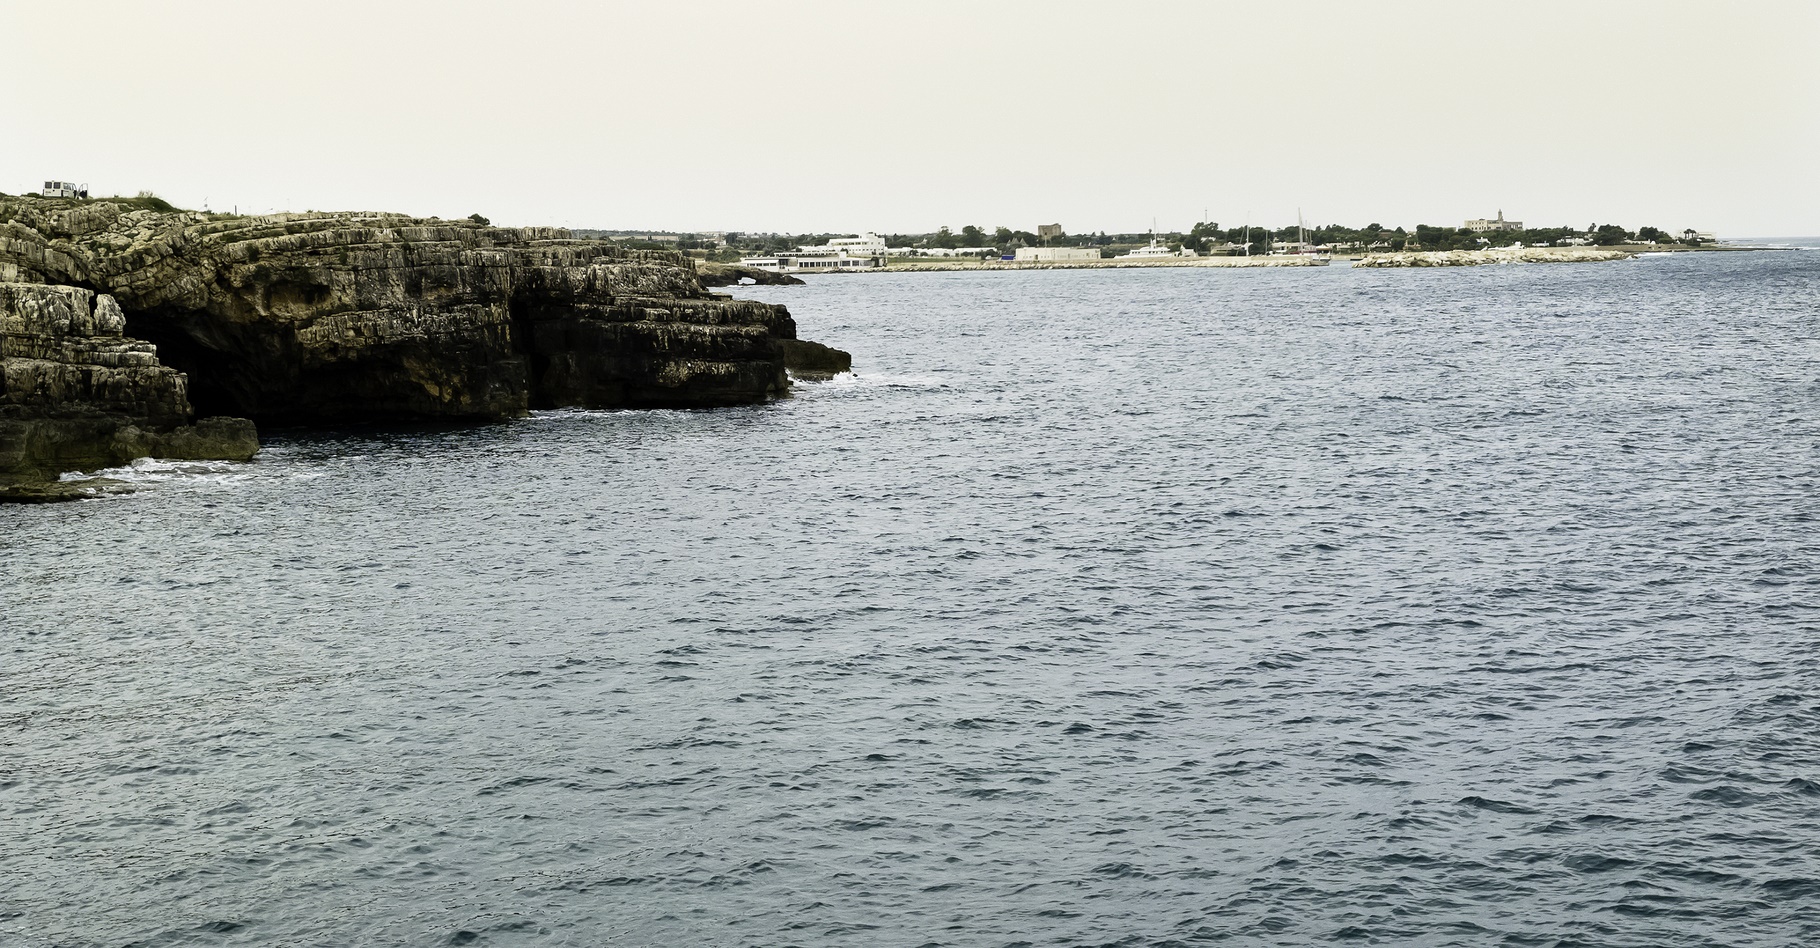 Le sirocco est un vent qui souffle aussi sur la mer Adriatique. © lovefranco, Shutterstock